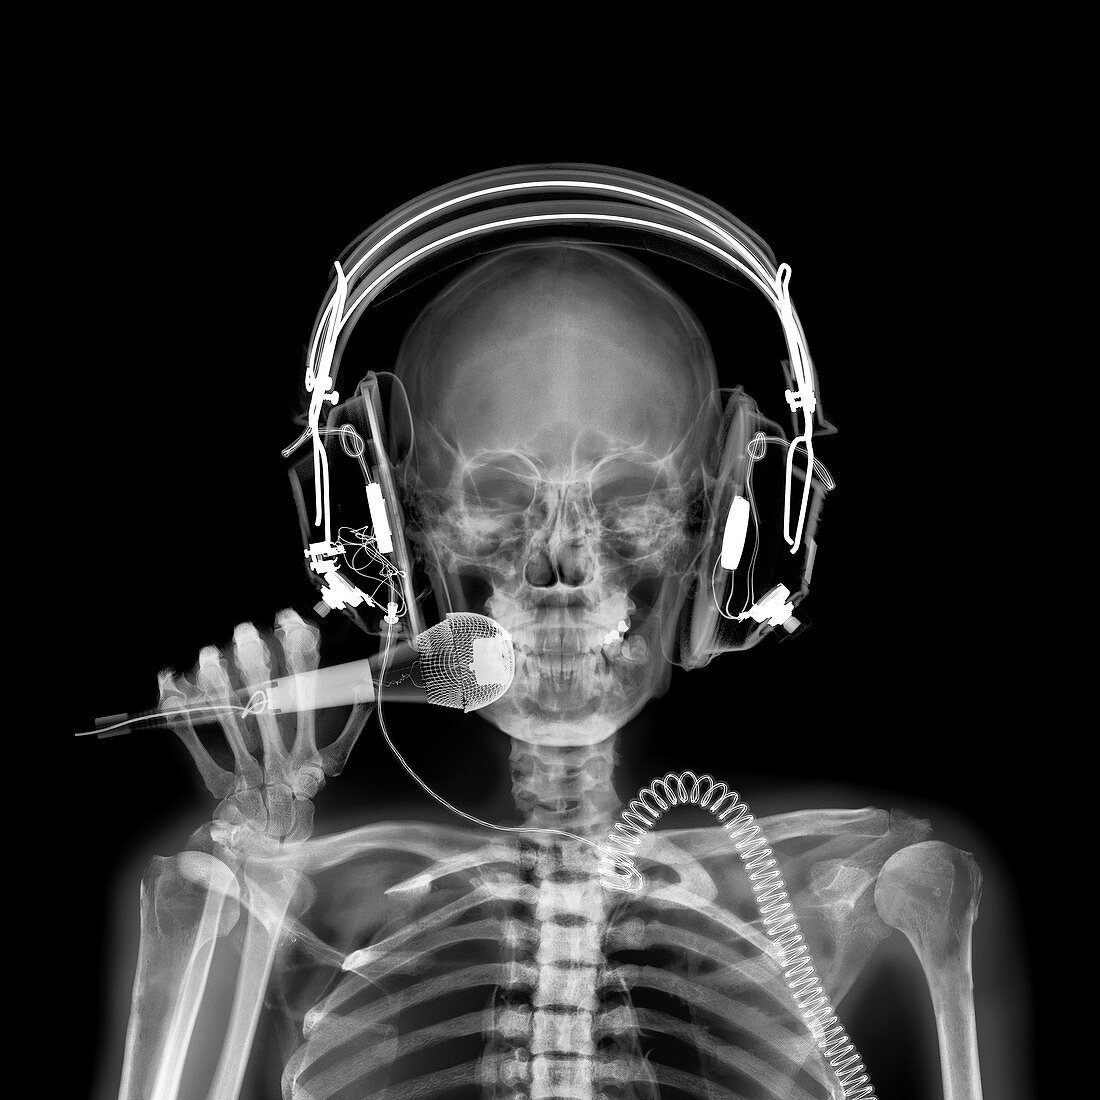 Disc jockey, X-ray